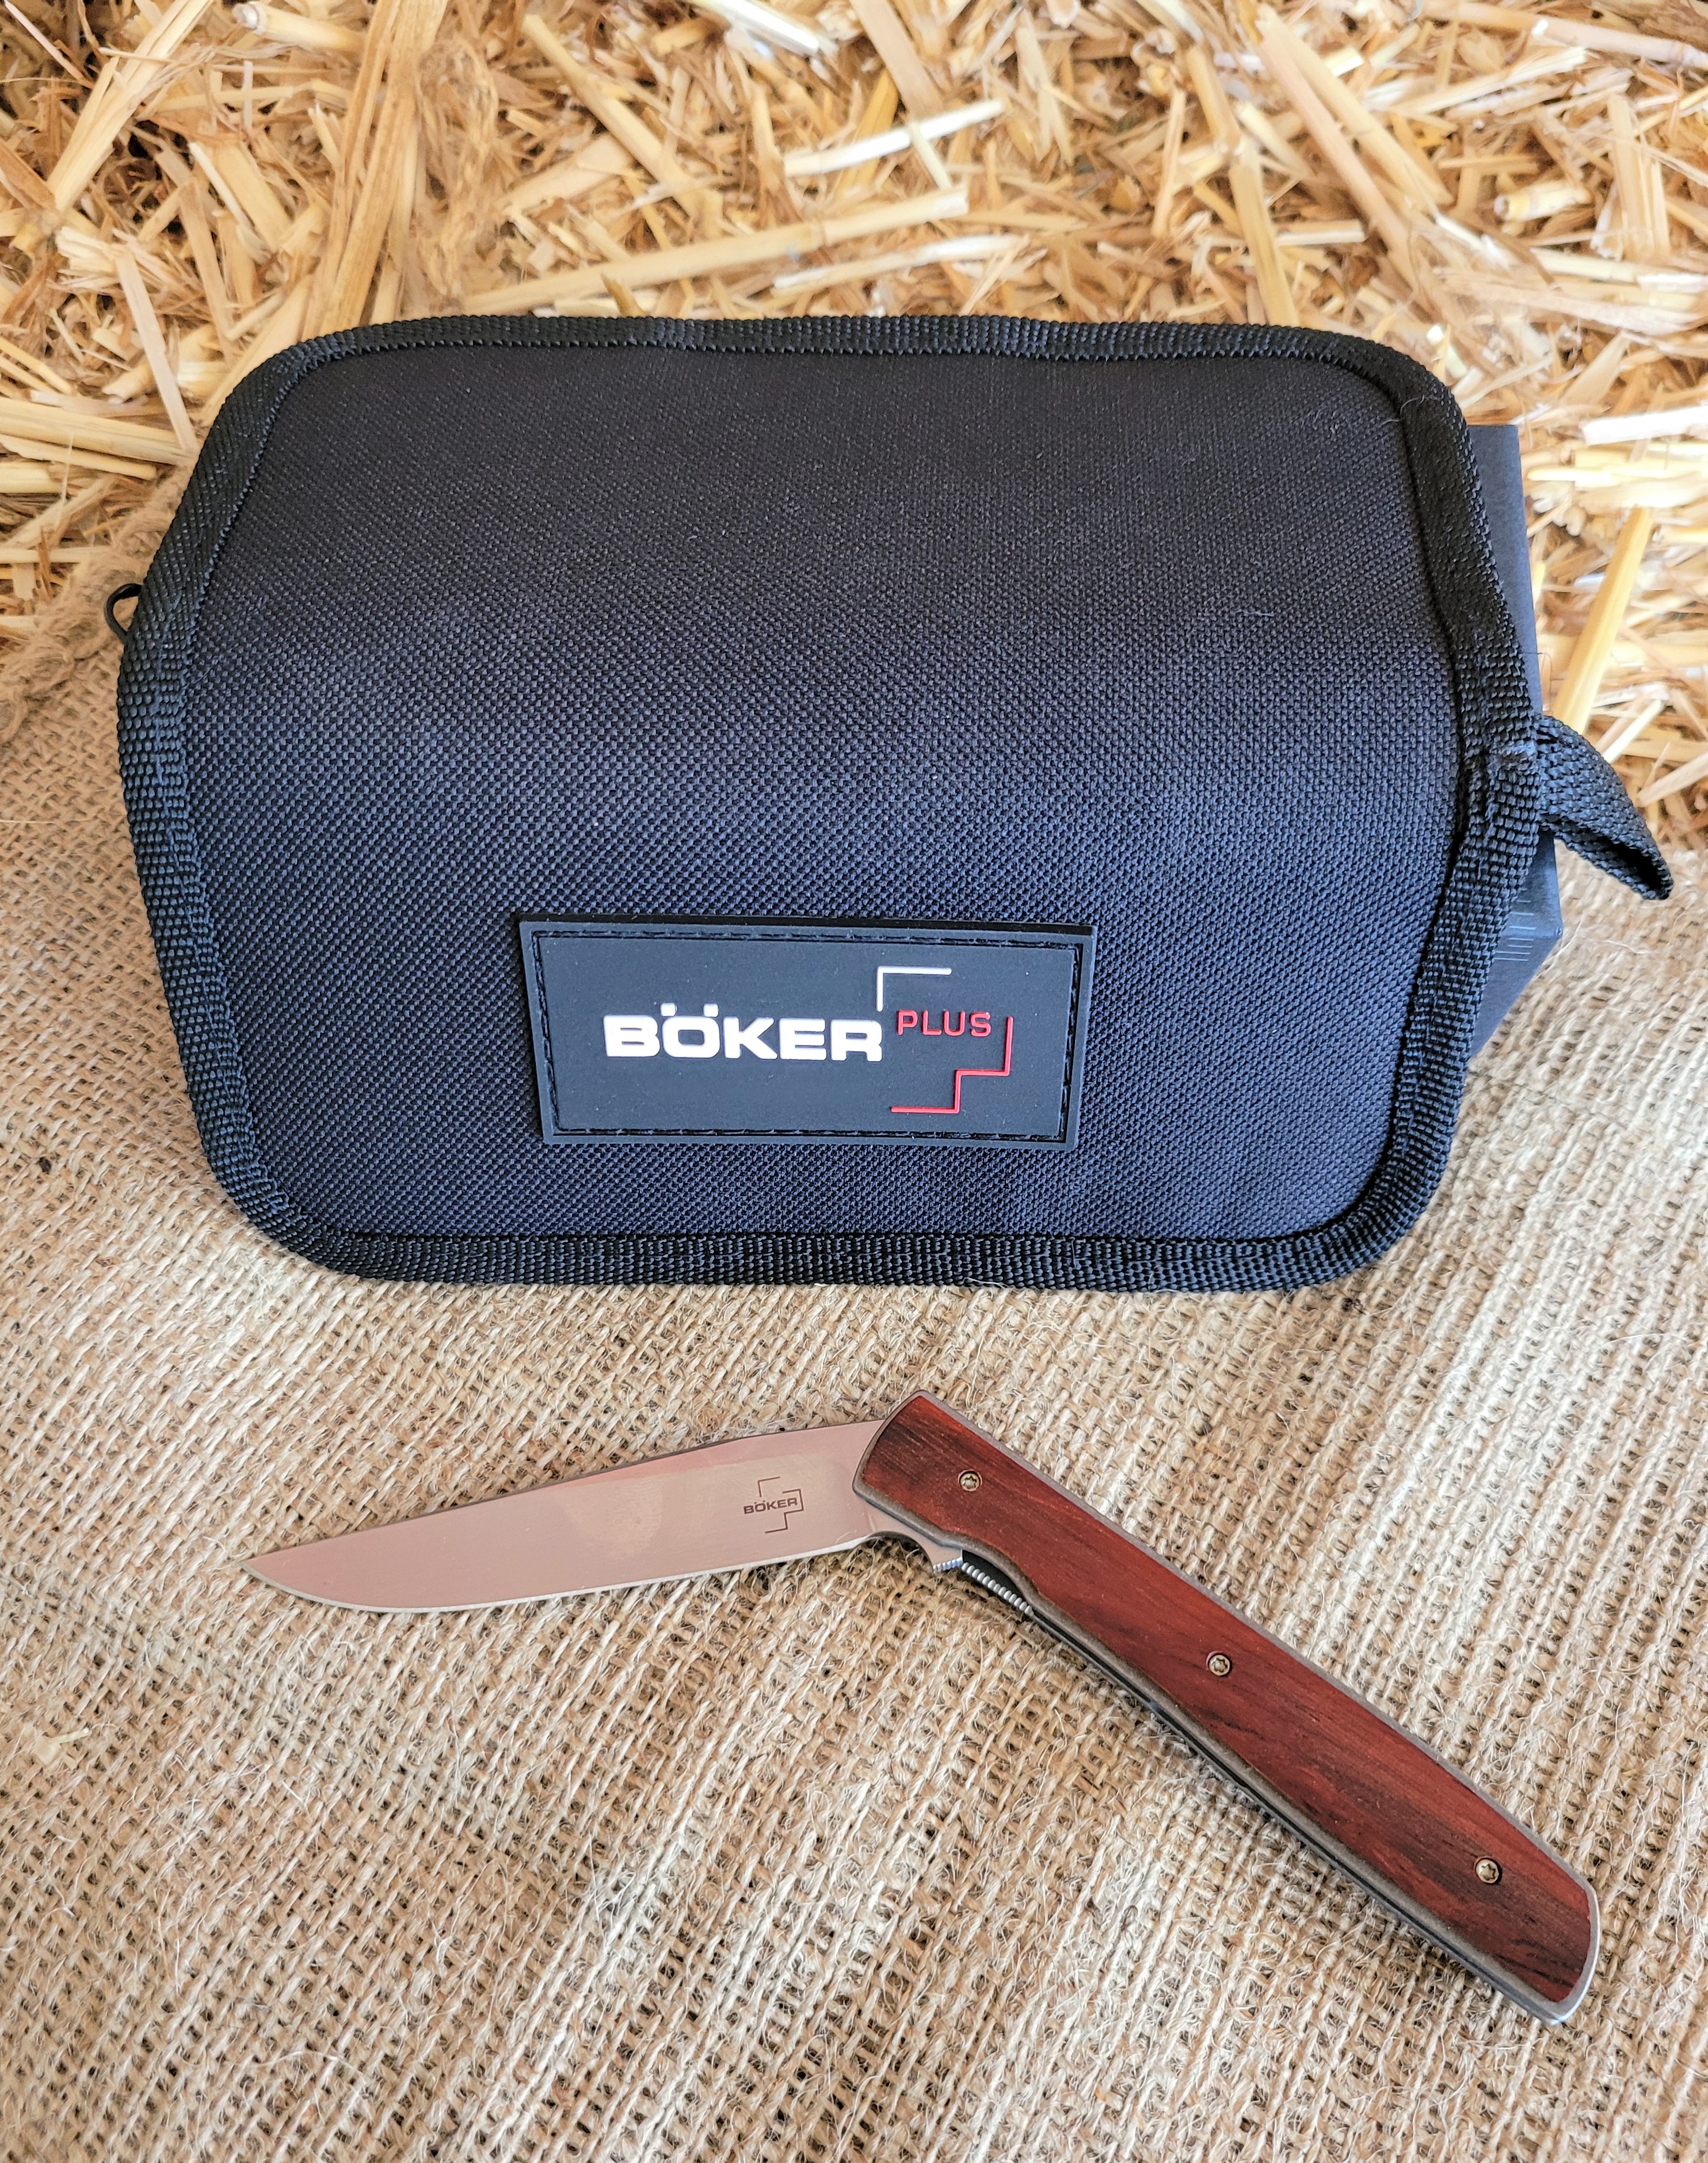 boker-plus-pocket-knife-red-wood-gw003574-.jpg